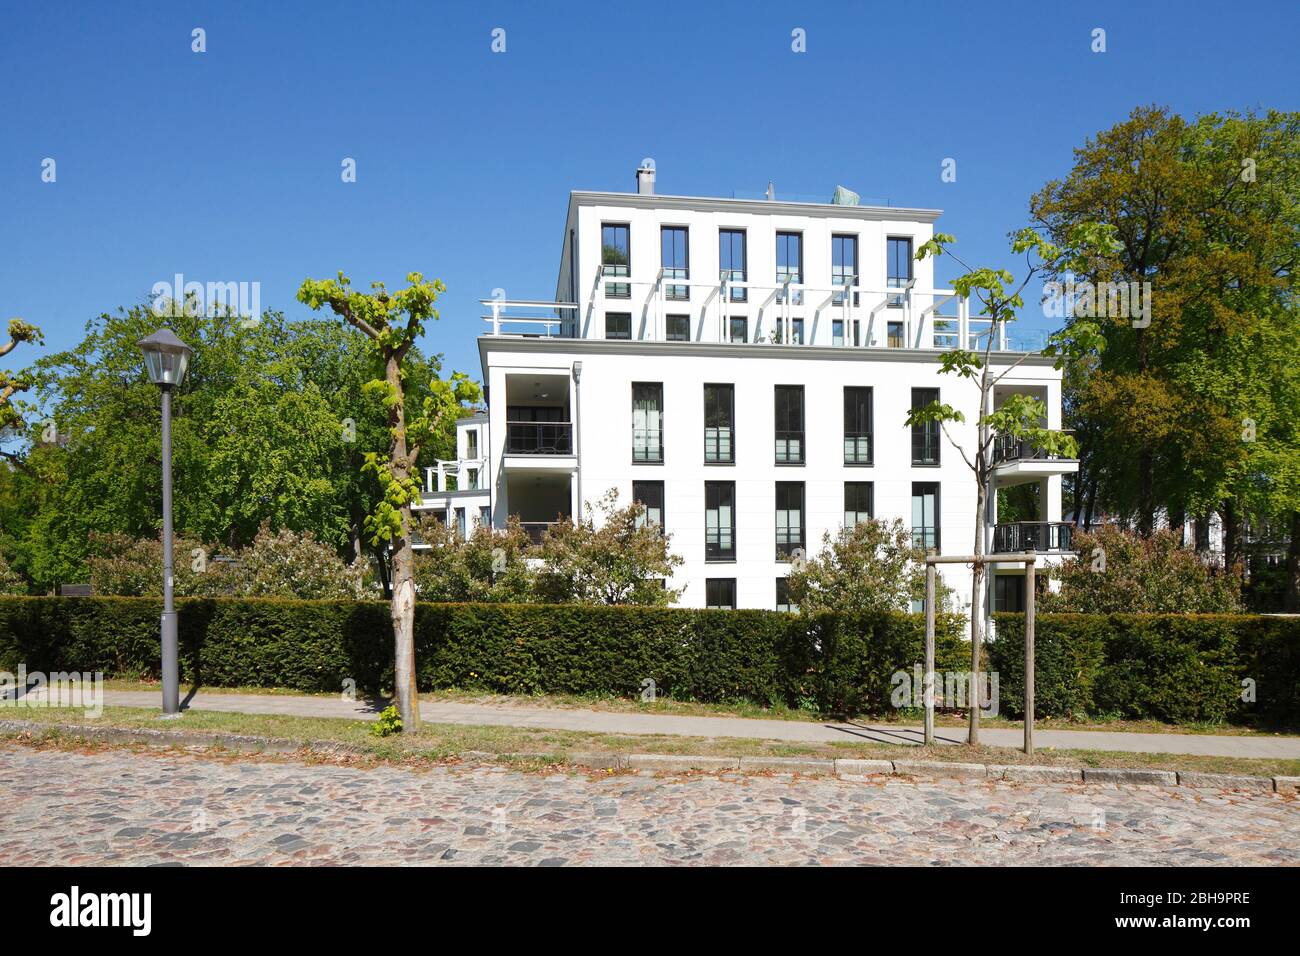 Modernes Wohngebäude, Mehrfamilienhaus, Binz auf Rügen, Insel Rügen, Mecklenburg-Vorpommern, Deutschland, Europa Stock Photo